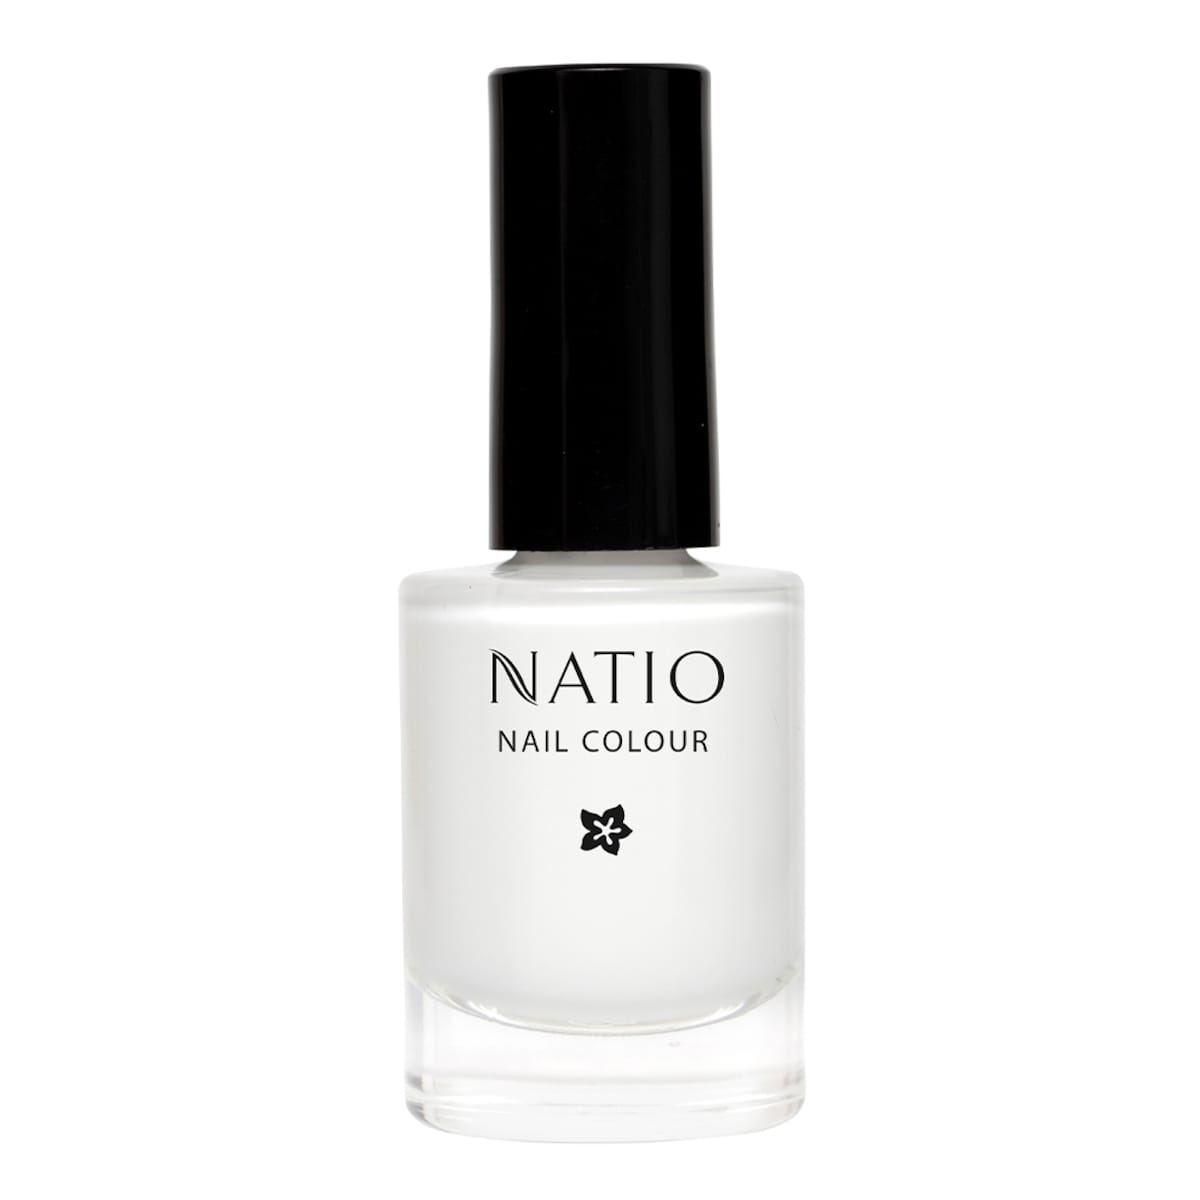 Natio Nail Colour Cloud 10ml (New)